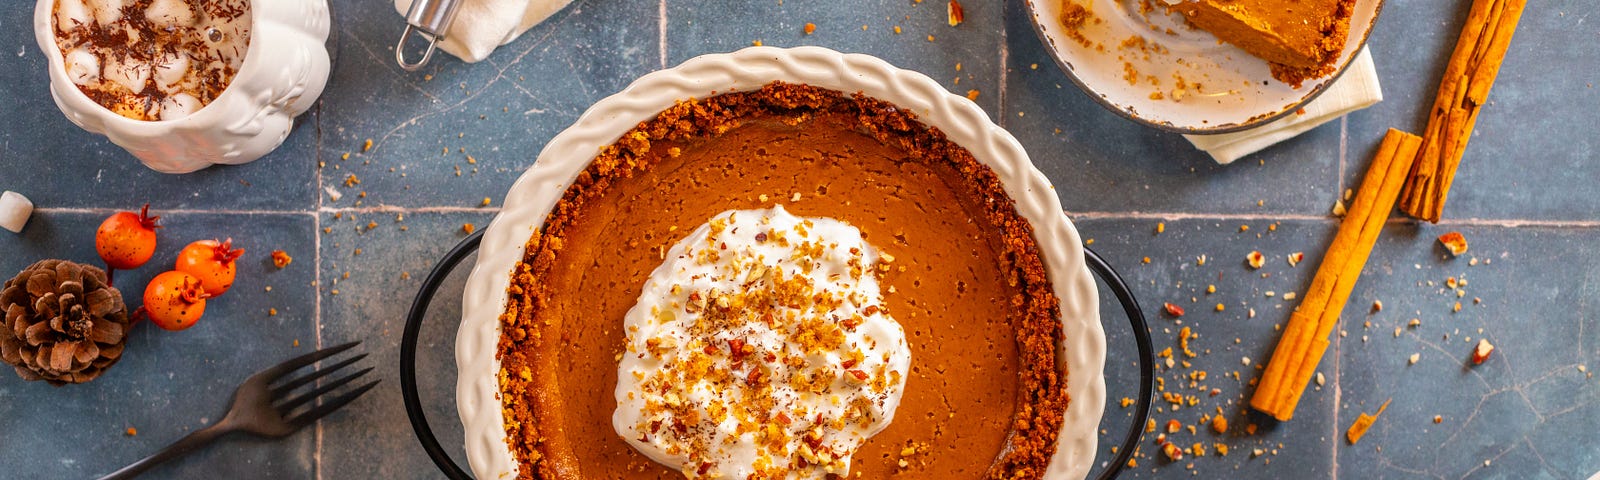 Ultimate Vegan Pumpkin Pie With Pecan-Graham Crust